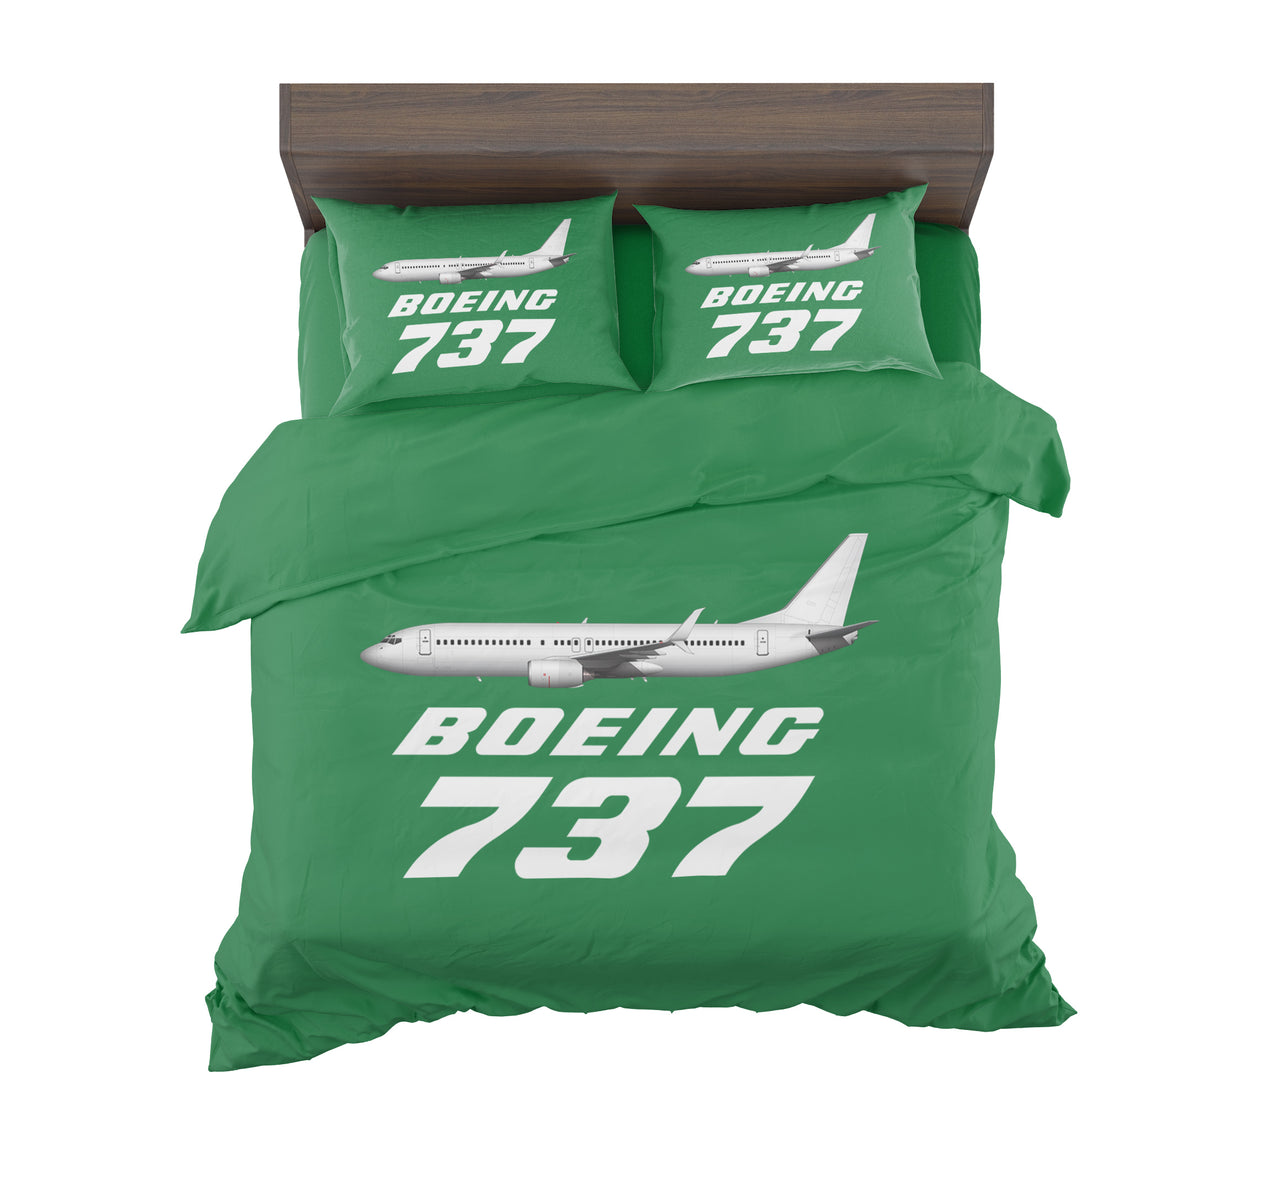 The Boeing 737 Designed Bedding Sets